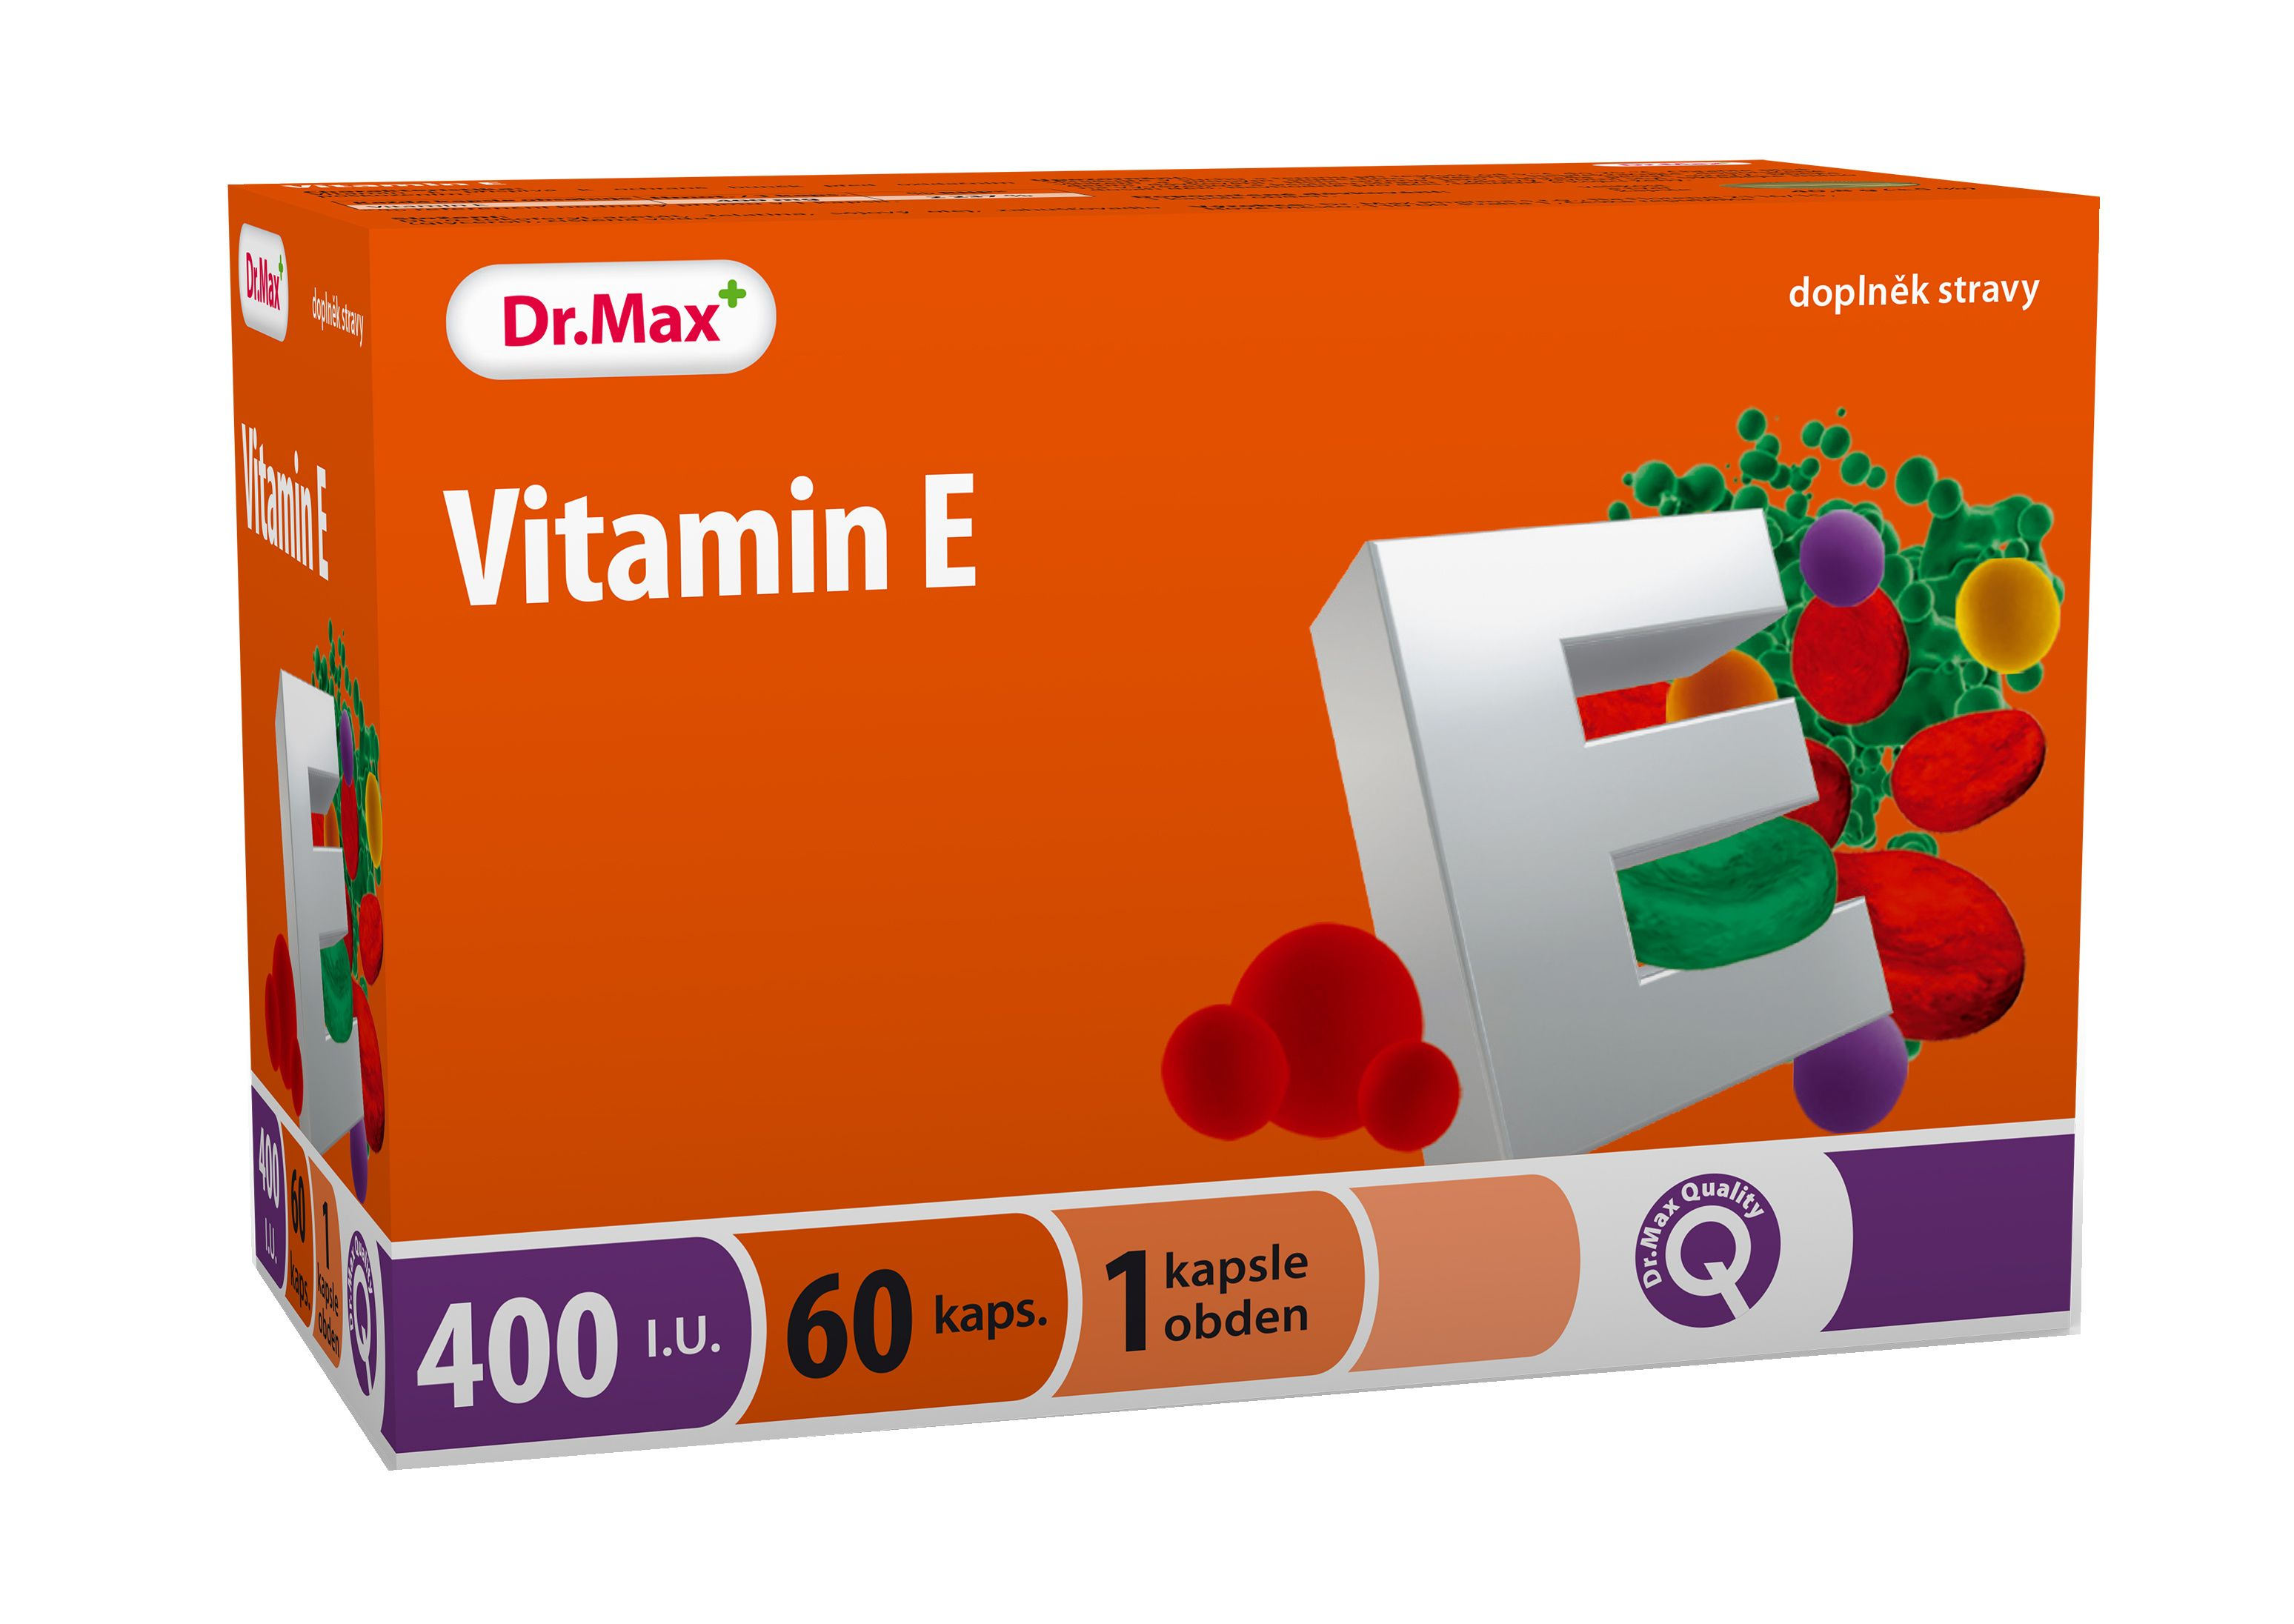 Dr.Max Vitamin E 400 I.U. 60 tobolek Dr.Max